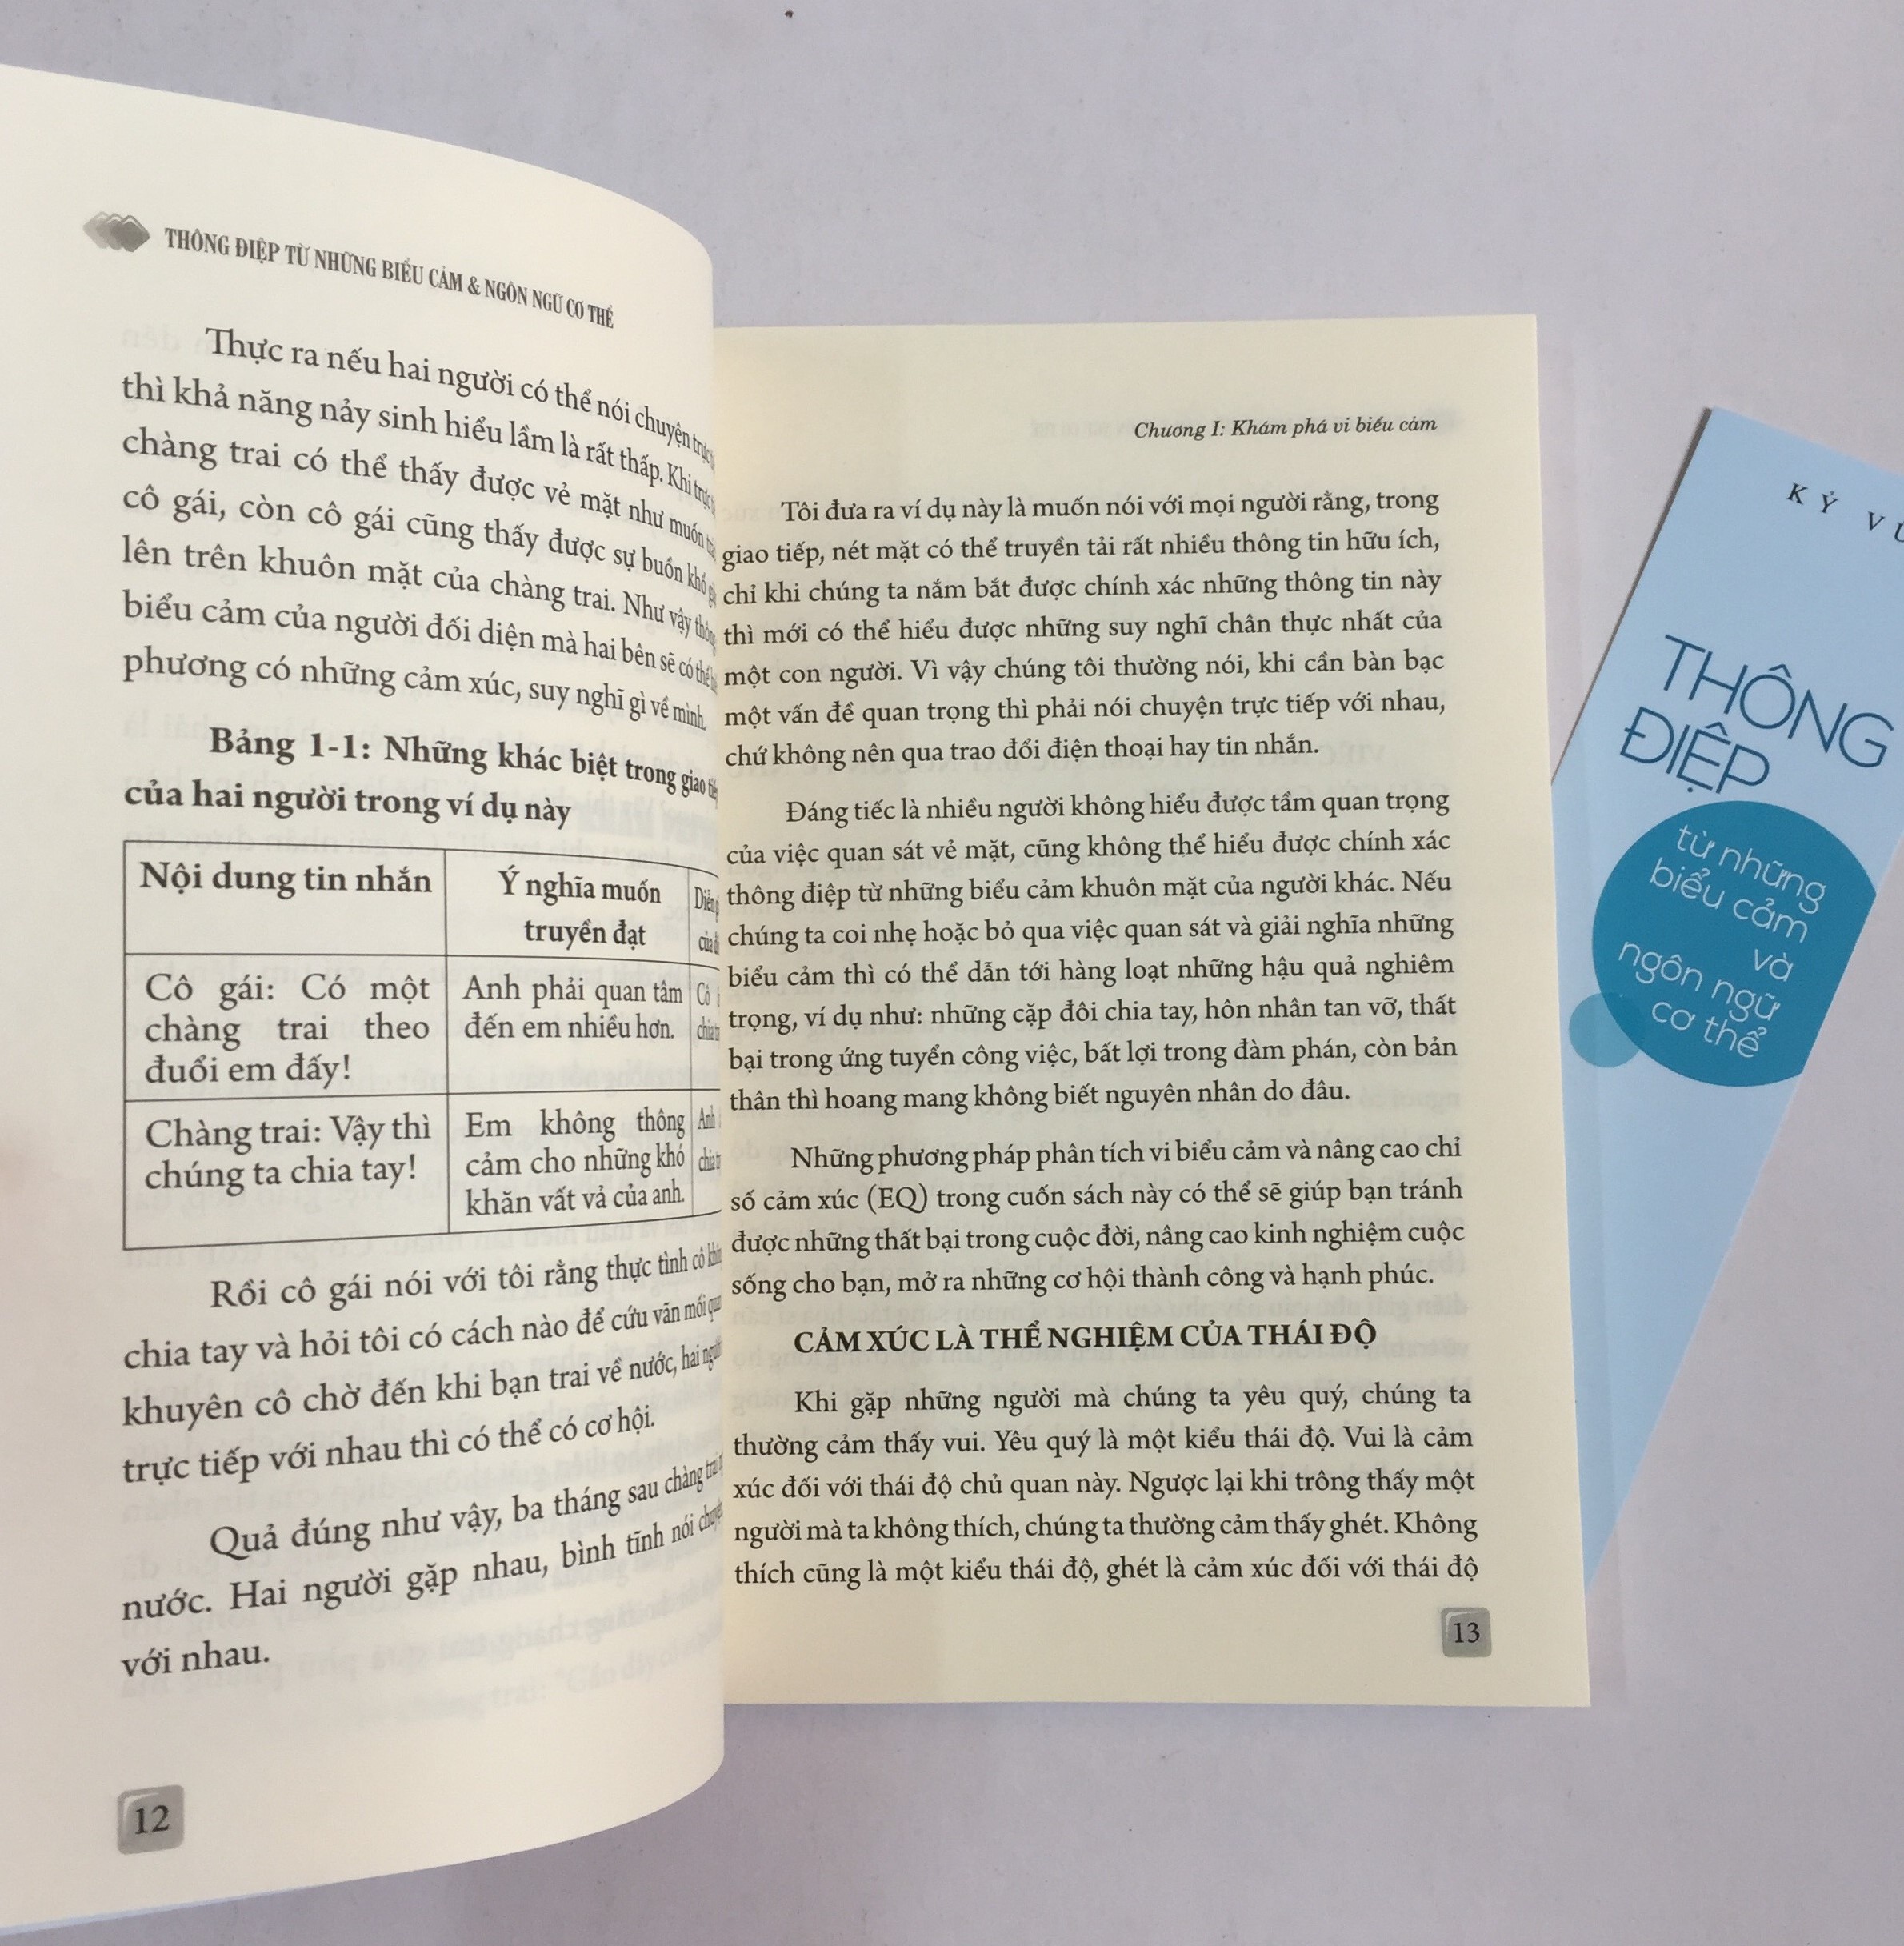 Combo 2 cuốn: Bí Quyết Đọc Tâm - Thấu Hiểu Người Khác Chỉ Trong Giây Lát + Thông Điệp Từ Những Biểu Cảm Và Ngôn Ngữ Cơ Thể + Sức Mạnh Của Những Thay Đổi Tâm Lý Tinh Tế (có bookmark)